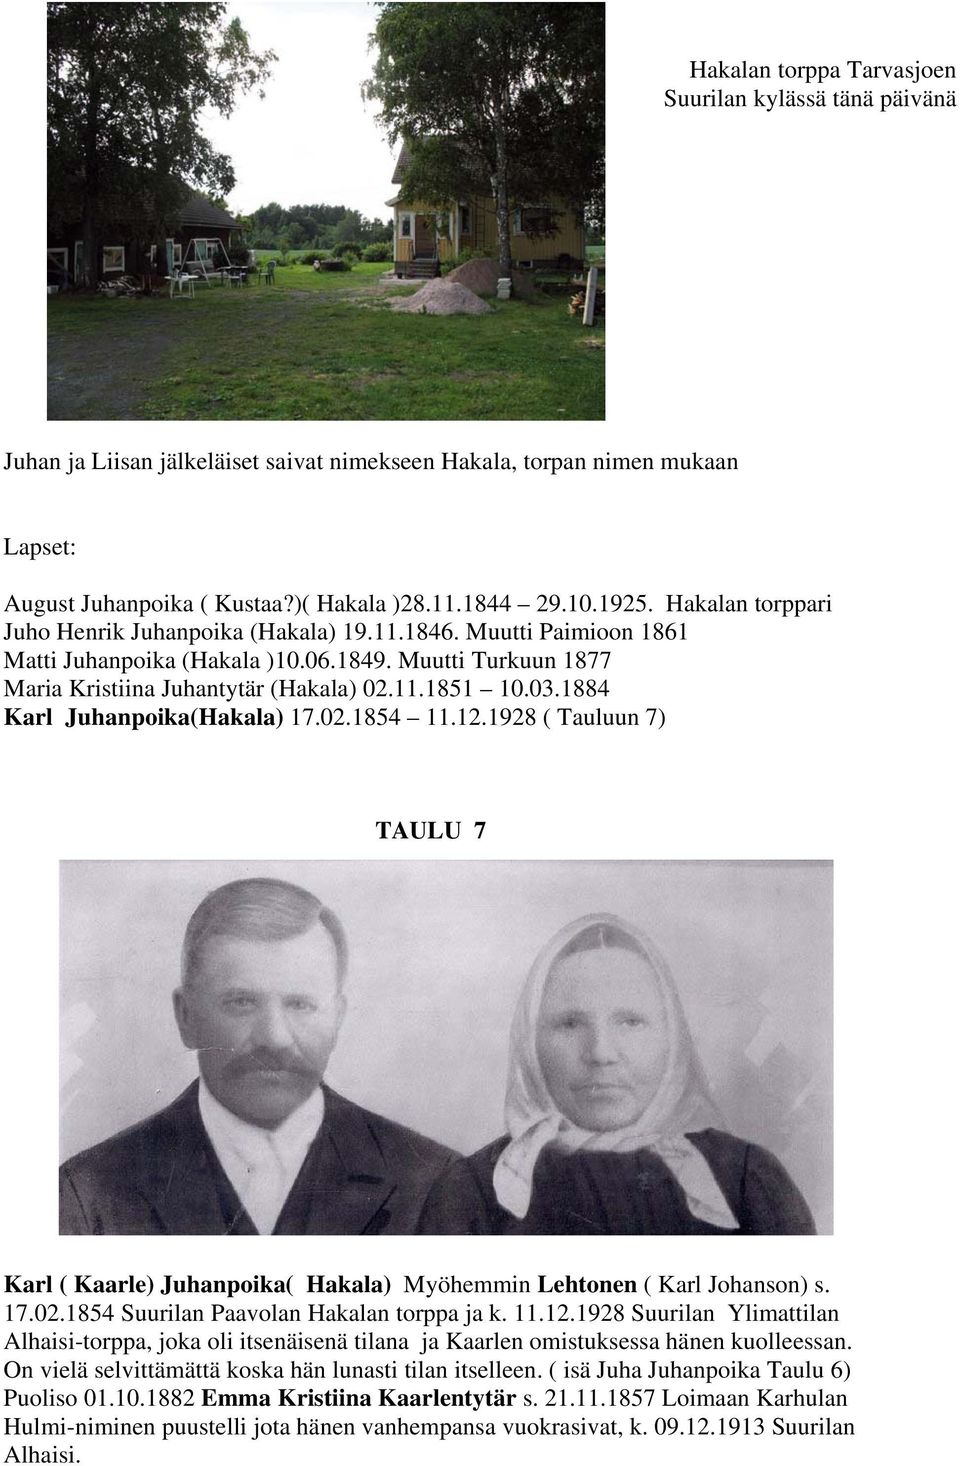 1884 Karl Juhanpoika(Hakala) 17.02.1854 11.12.1928 ( Tauluun 7) TAULU 7 Karl ( Kaarle) Juhanpoika( Hakala) Myöhemmin Lehtonen ( Karl Johanson) s. 17.02.1854 Suurilan Paavolan Hakalan torppa ja k. 11.12.1928 Suurilan Ylimattilan Alhaisi-torppa, joka oli itsenäisenä tilana ja Kaarlen omistuksessa hänen kuolleessan.